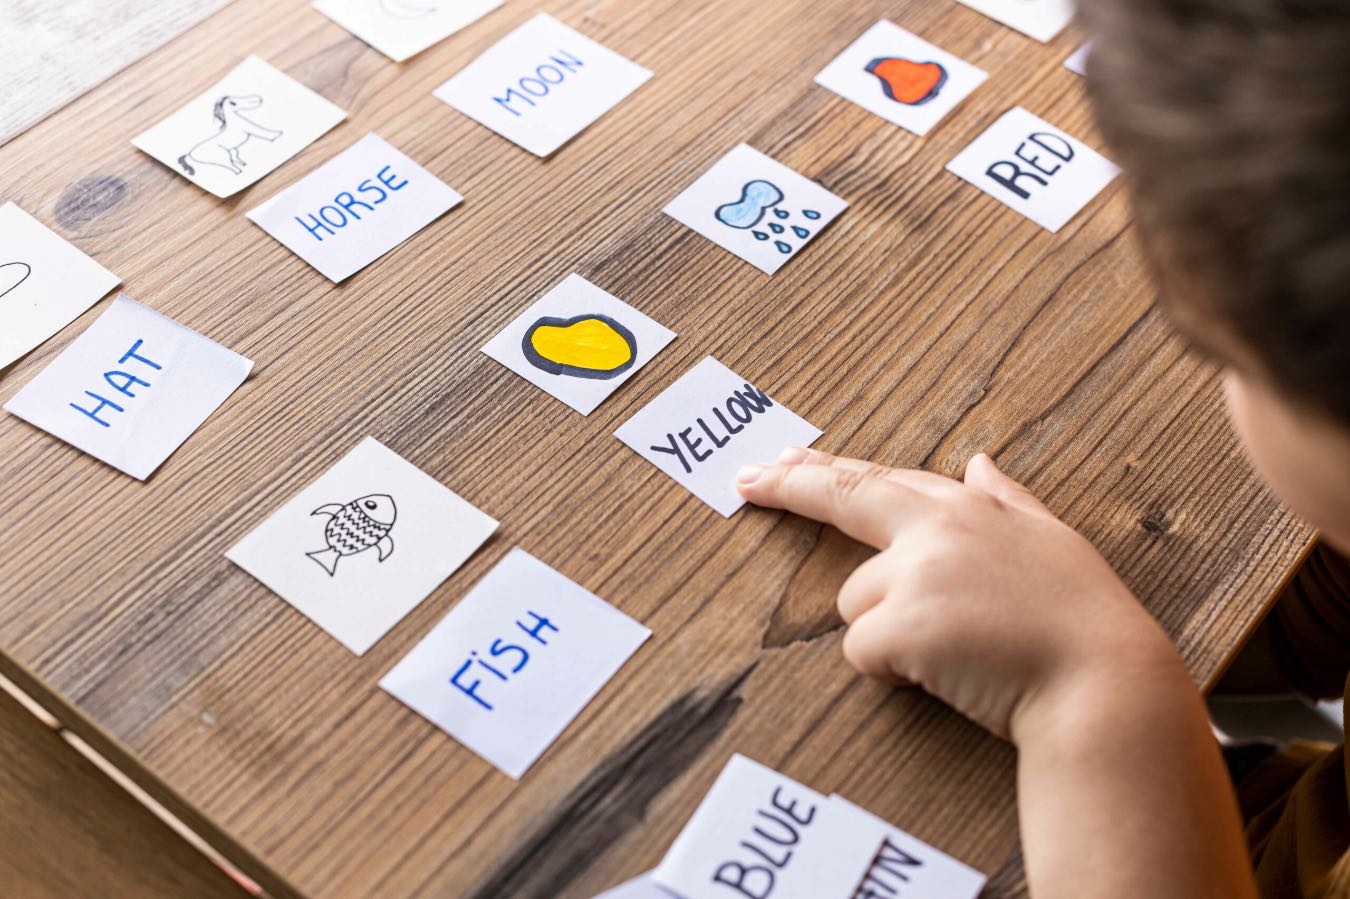 Nauka przez zabawę, czyli jak rozwijać umiejętności językowe dziecka, rozbudzając jego kreatywność?